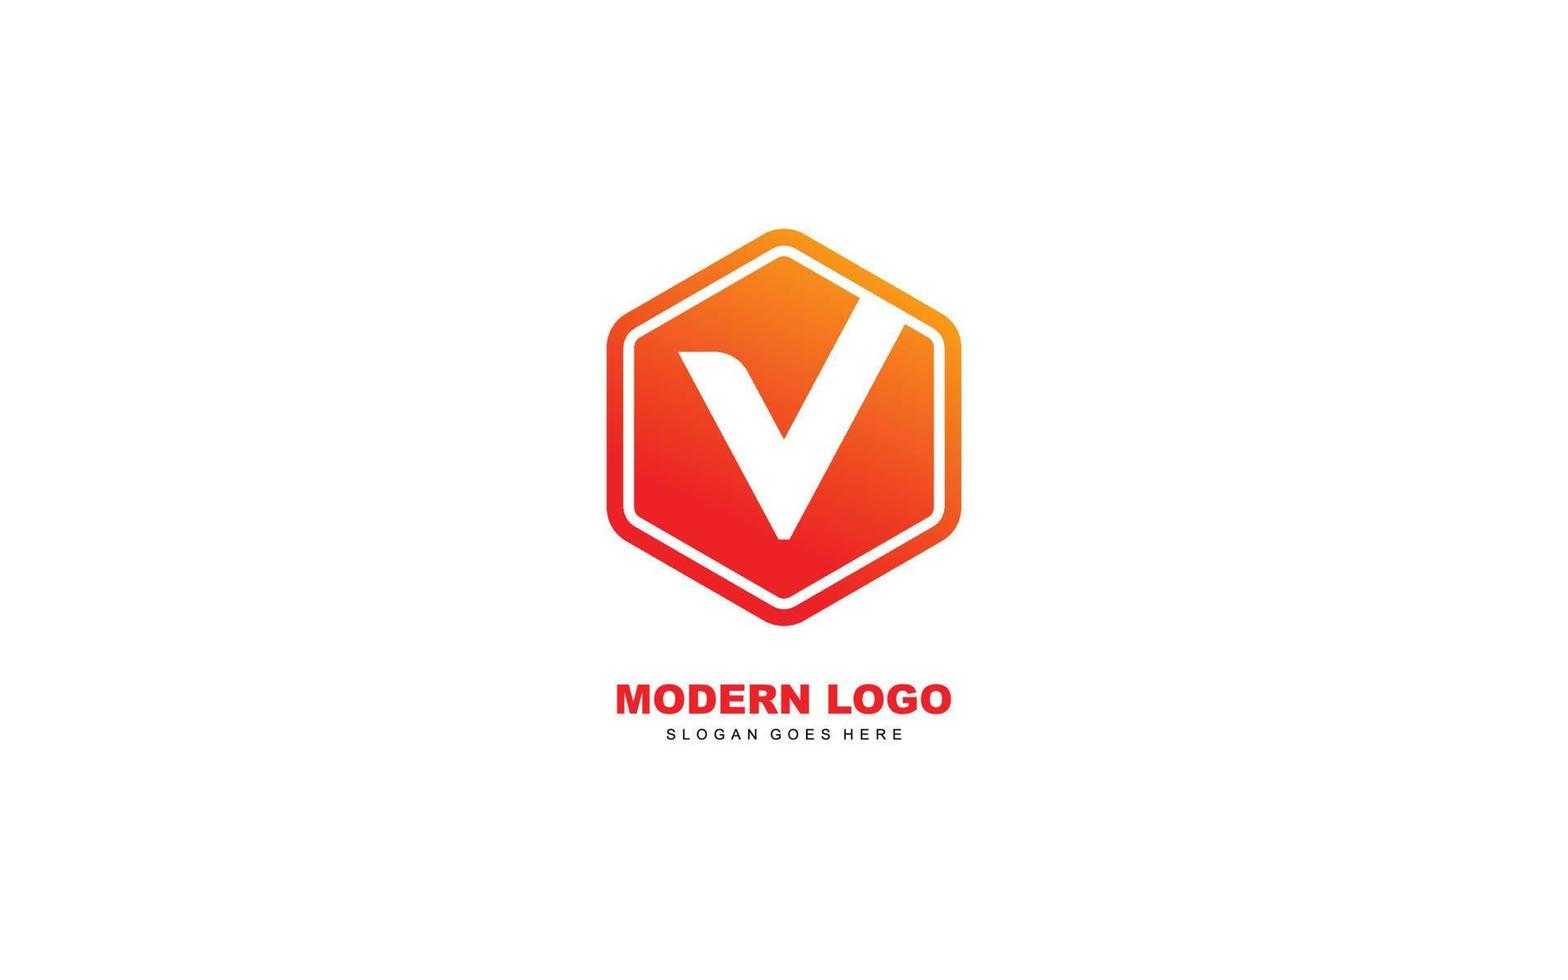 V logo shape for identity. letter template vector illustration for your brand.